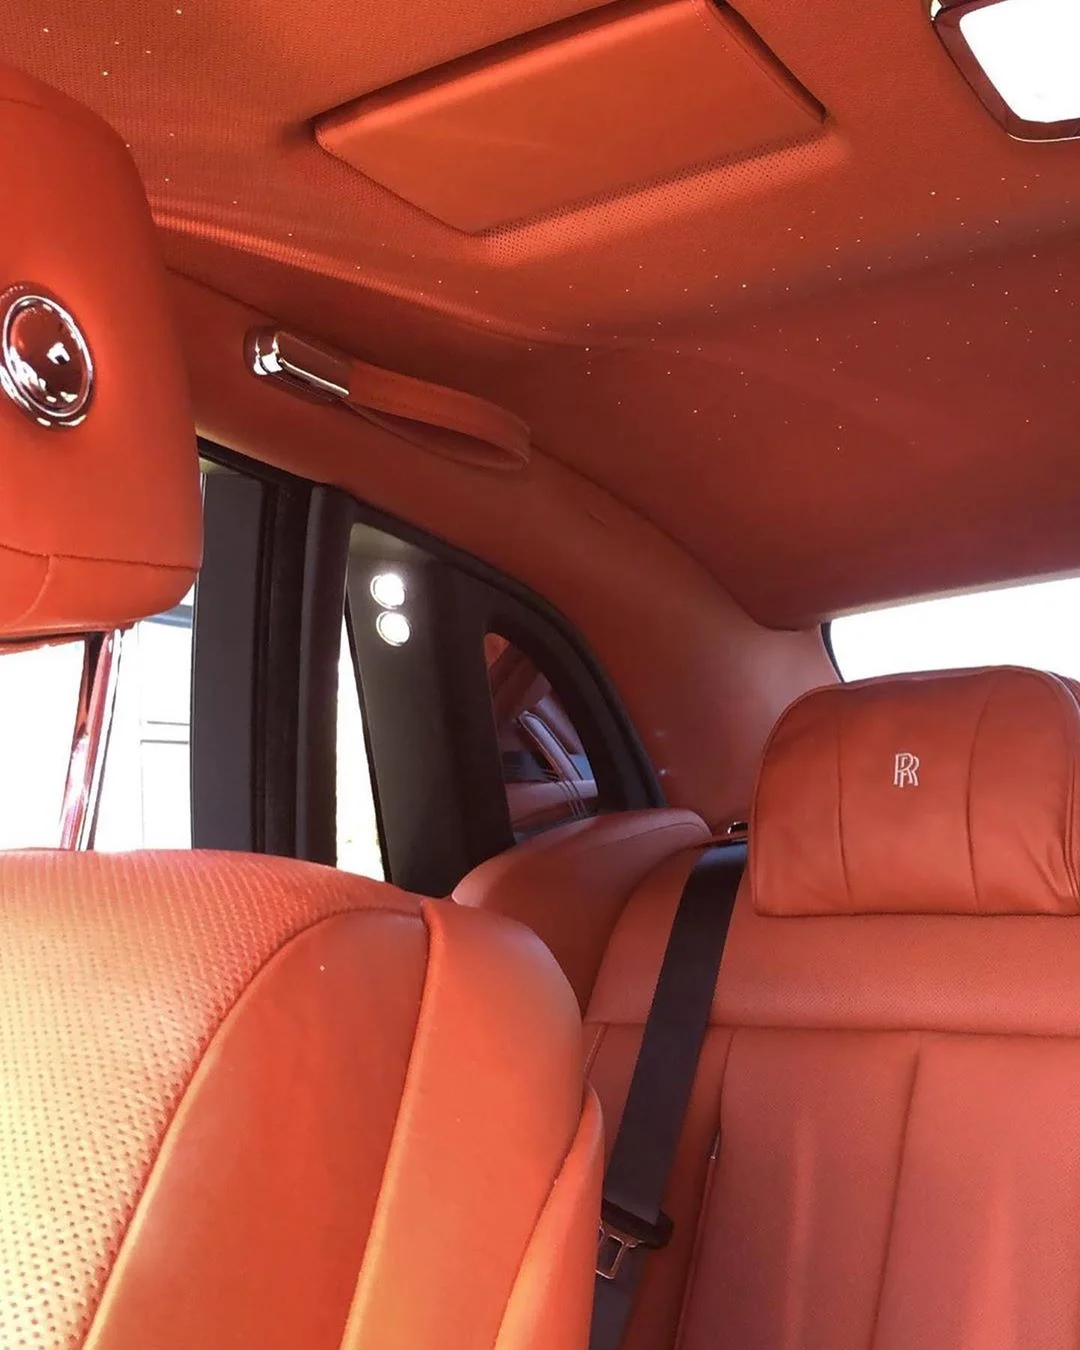 Кайлі Дженнер показала своє розкішне авто за 450 тисяч доларів - фото 440482